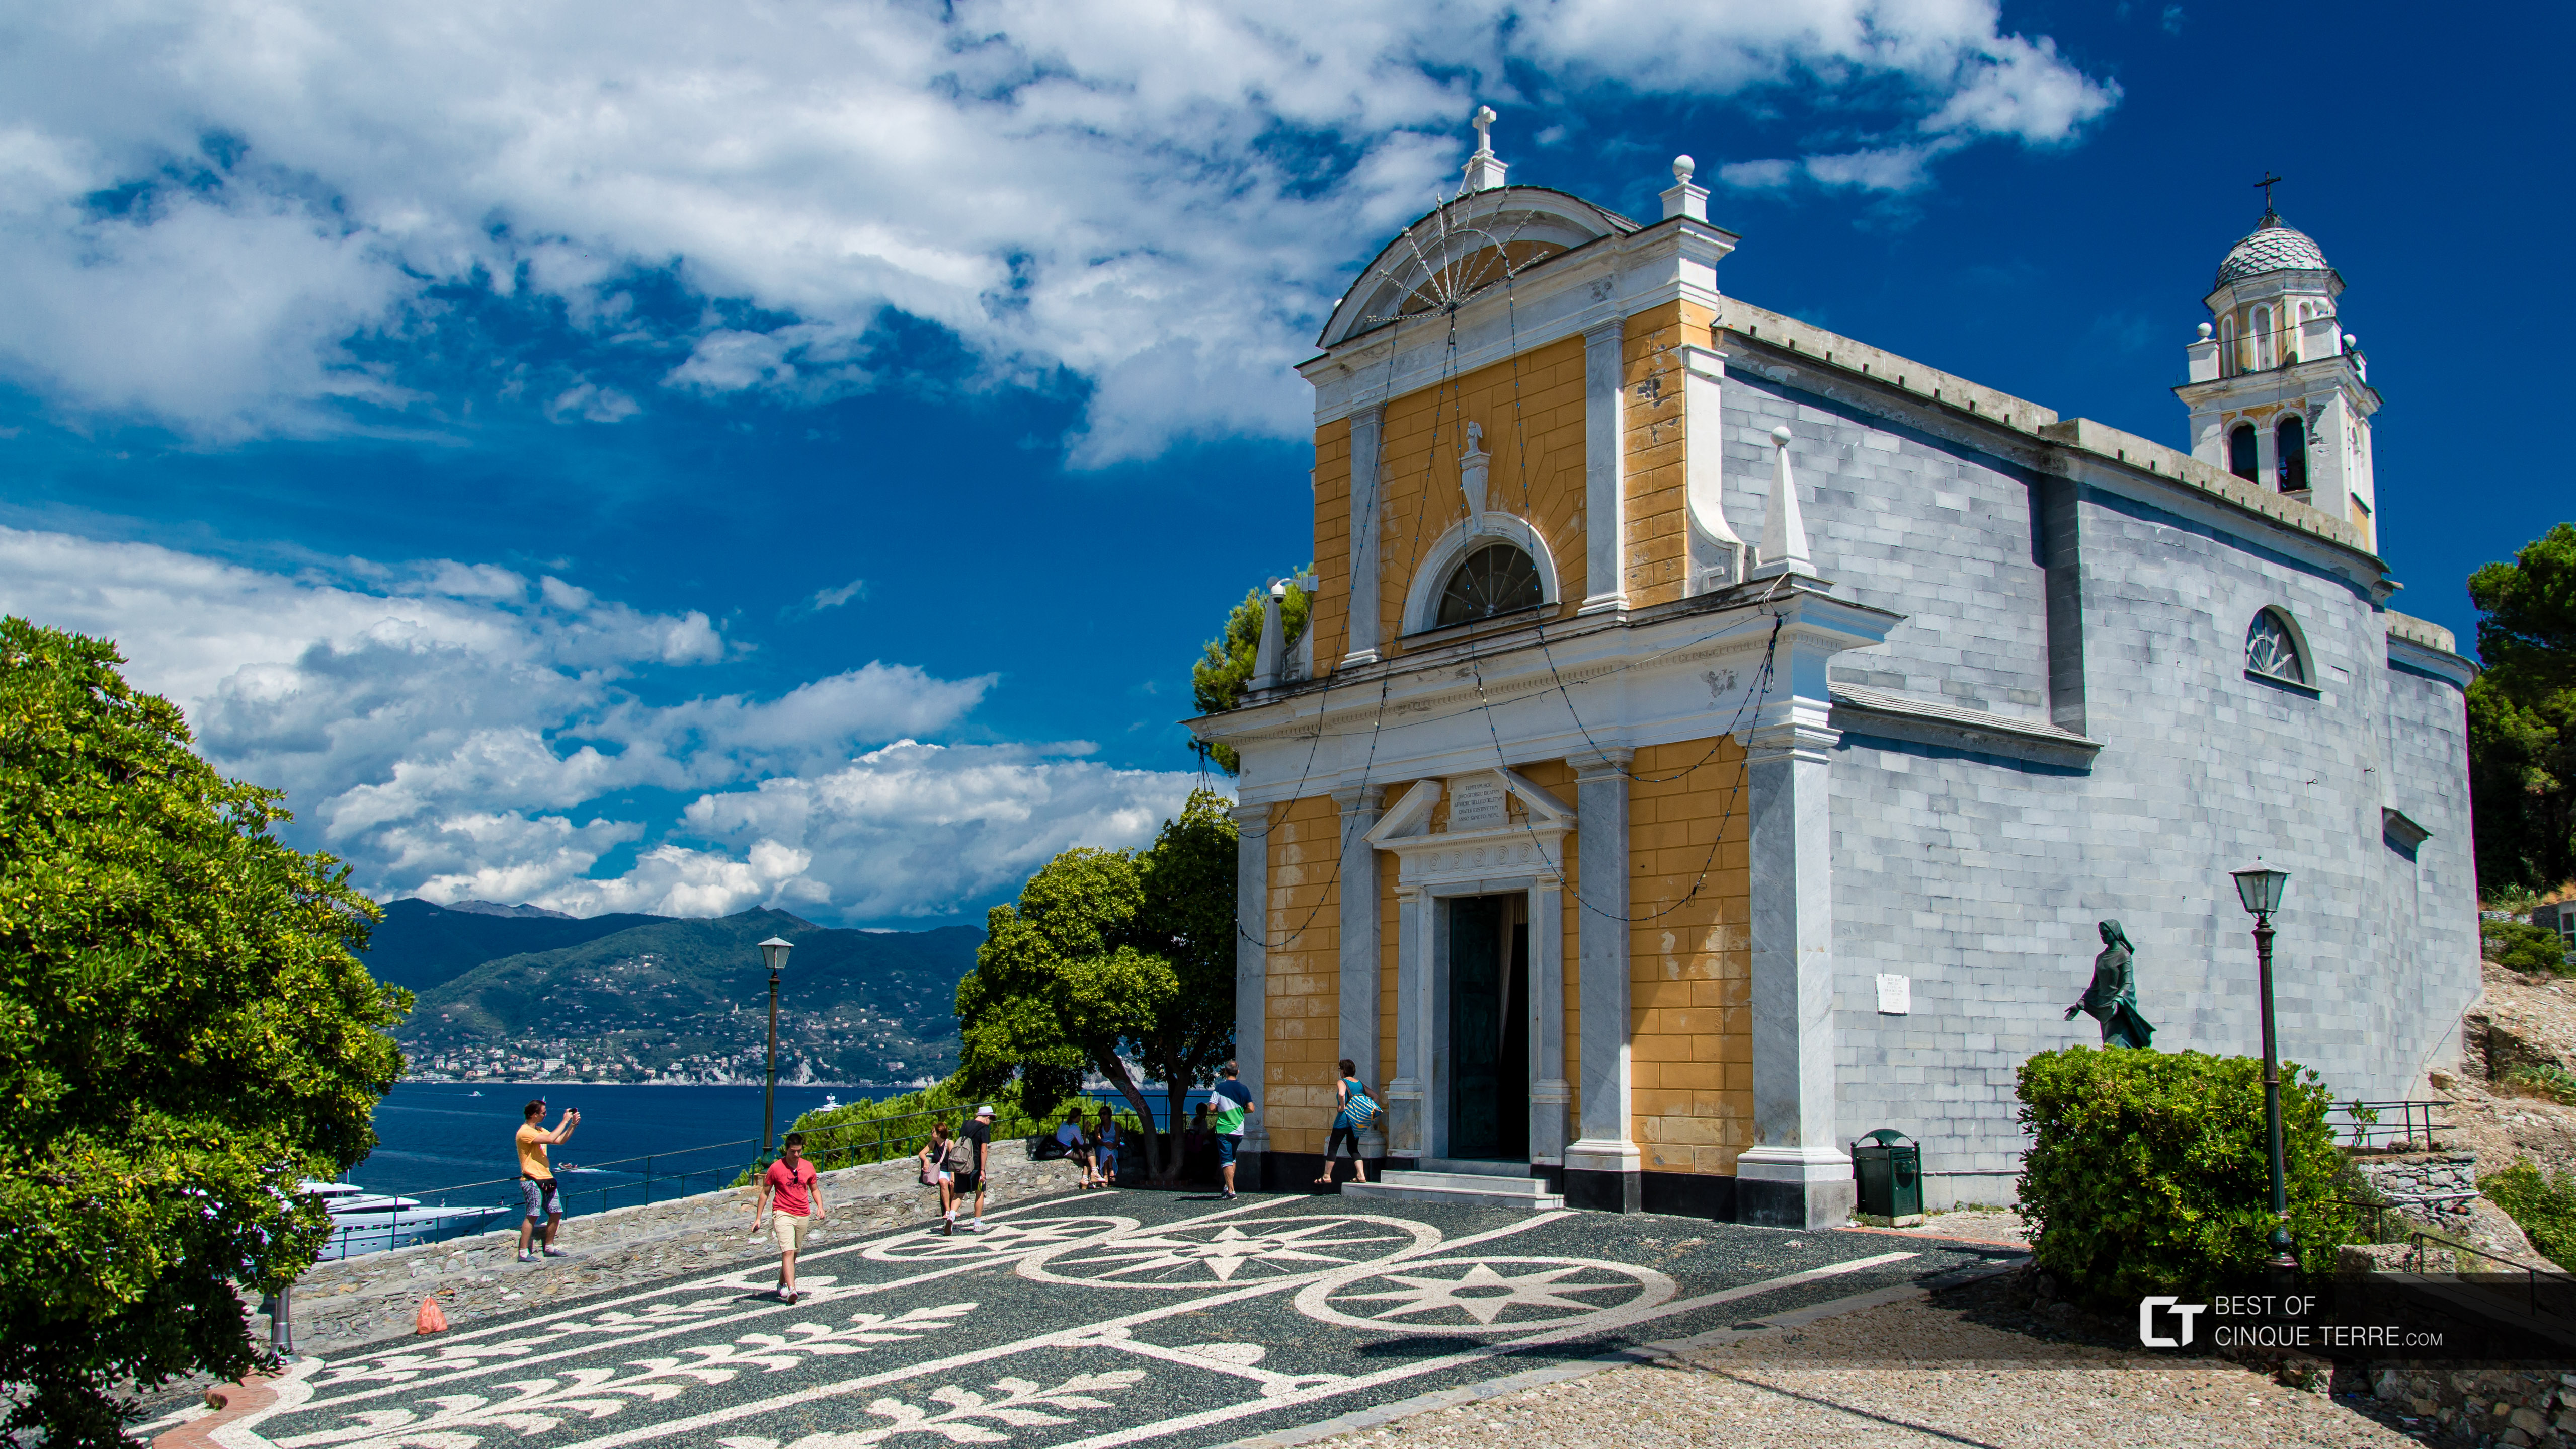 Igreja de São Jorge, Portofino, Itália